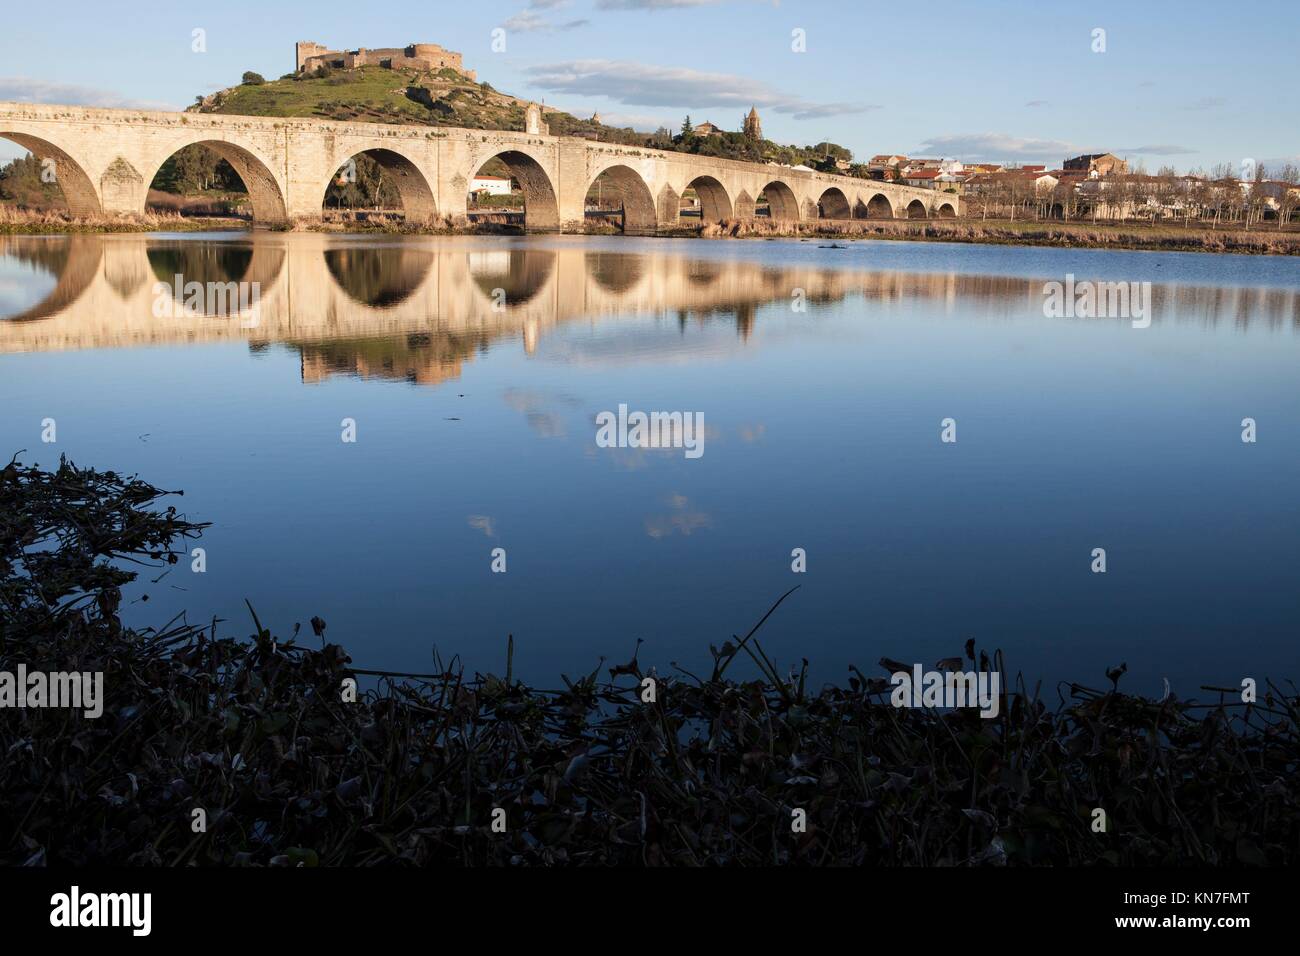 Medellin alte Brücke und Schloss von Guadiana Riverside, Spanien. Stockfoto